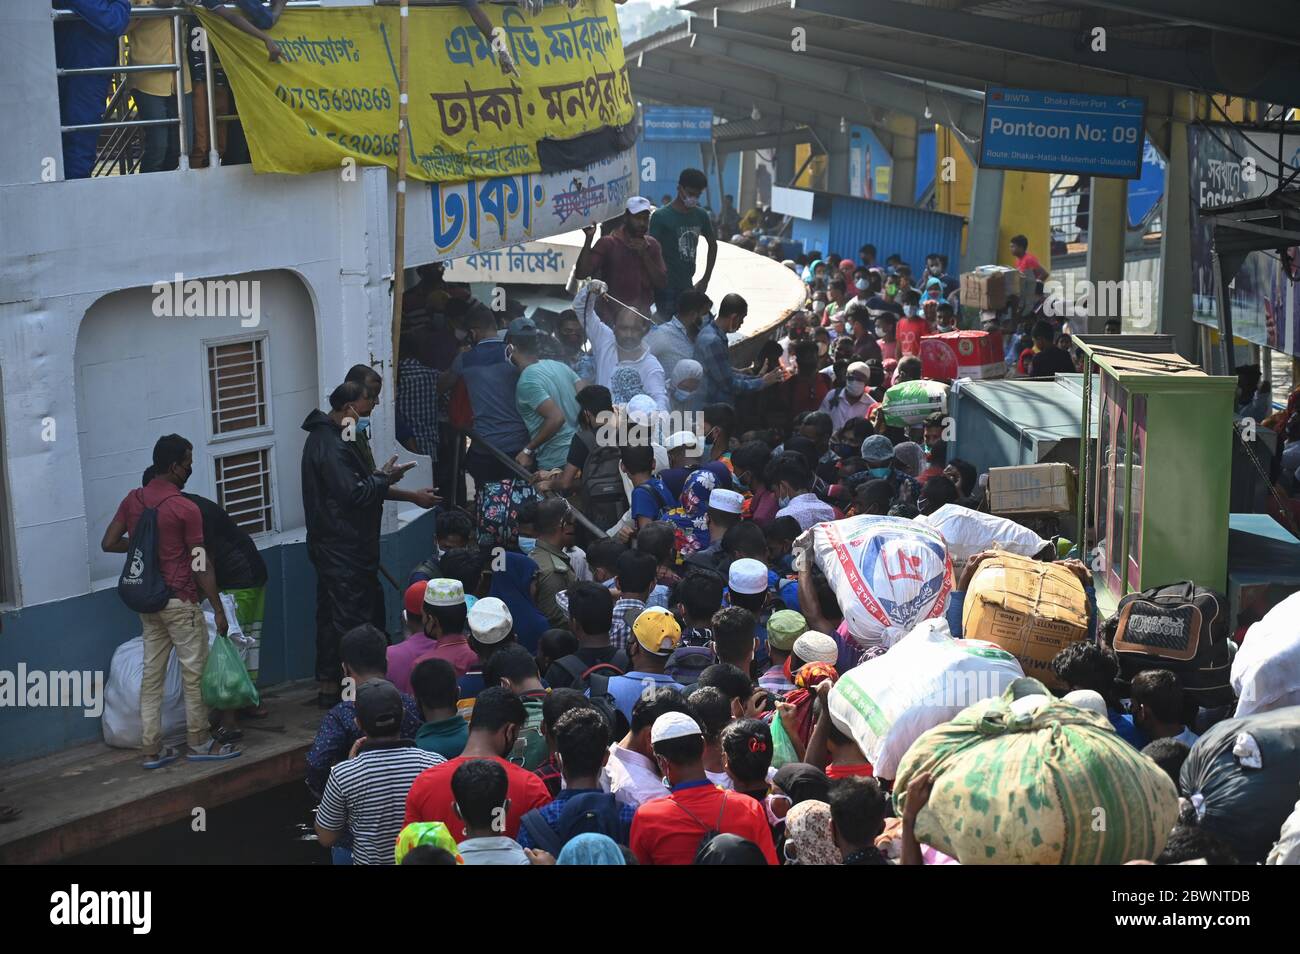 Les migrants ont envahi le terminal de ferry de Sadarghat alors qu'ils quittent la capitale après la fin d'un confinement à la suite de l'épidémie de coronavirus COVID-19 à Dhaka, au Bangladesh, le 1er juin 2020. Banque D'Images